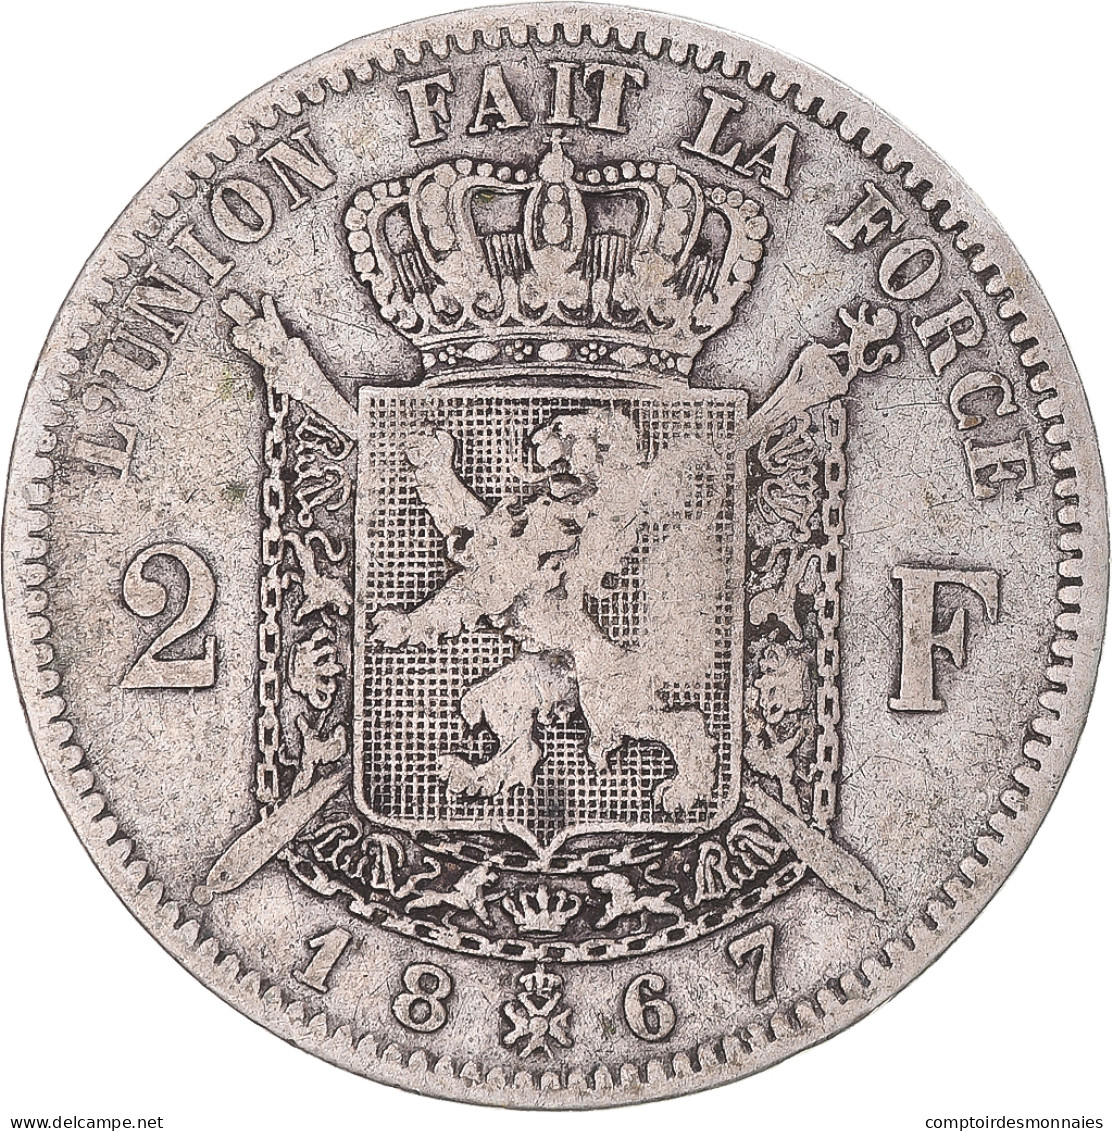 Monnaie, Belgique, Leopold II, 2 Francs, 2 Frank, 1867, TB+, Argent, KM:30.1 - 2 Francs